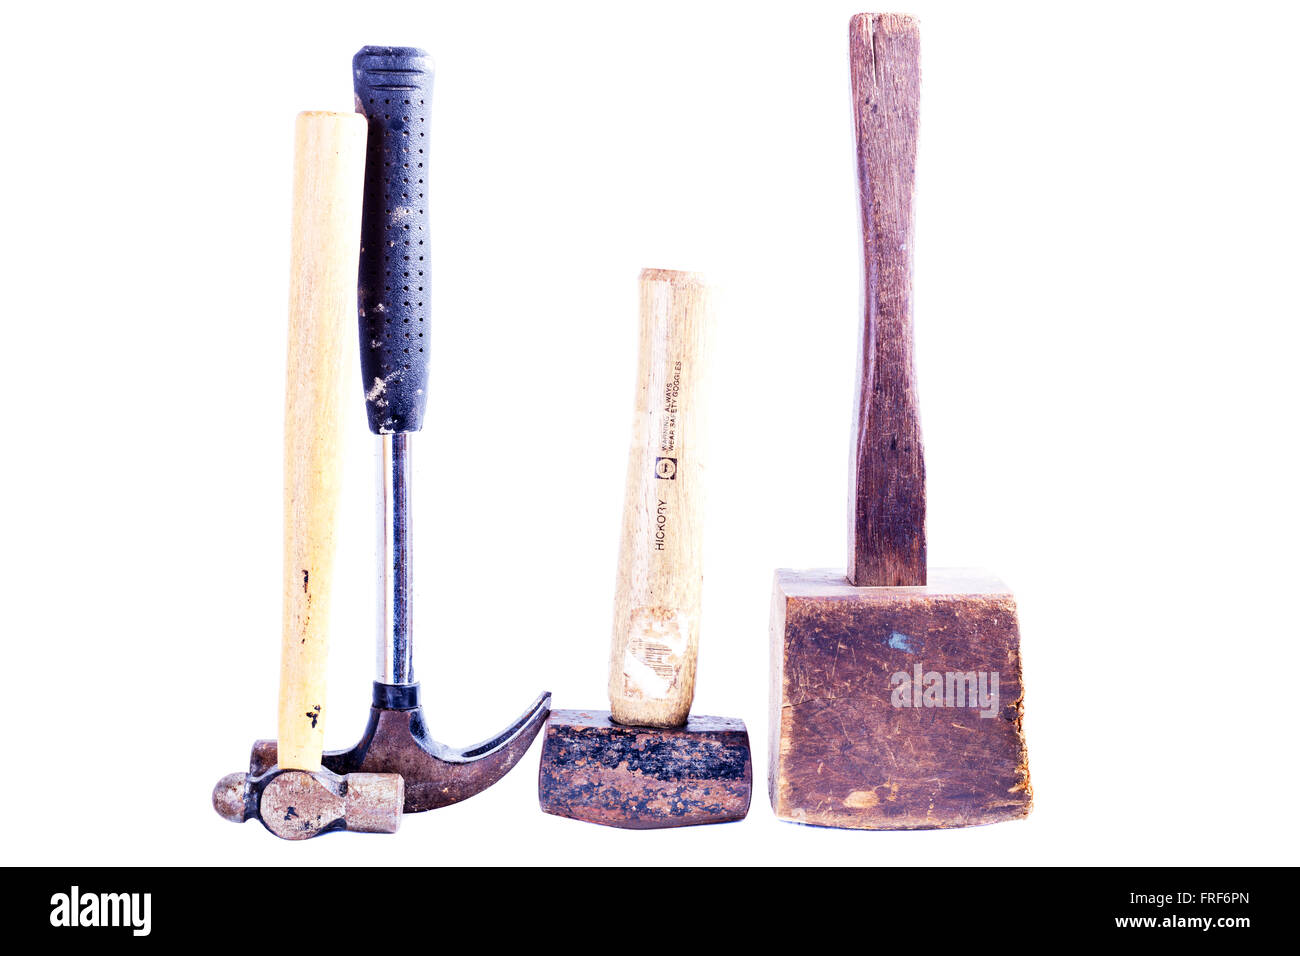 Marteau marteaux marteau maillet forfaitaire griffe marteau à panne ronde outils outils logo produit découpe marque découper fond blanc Banque D'Images